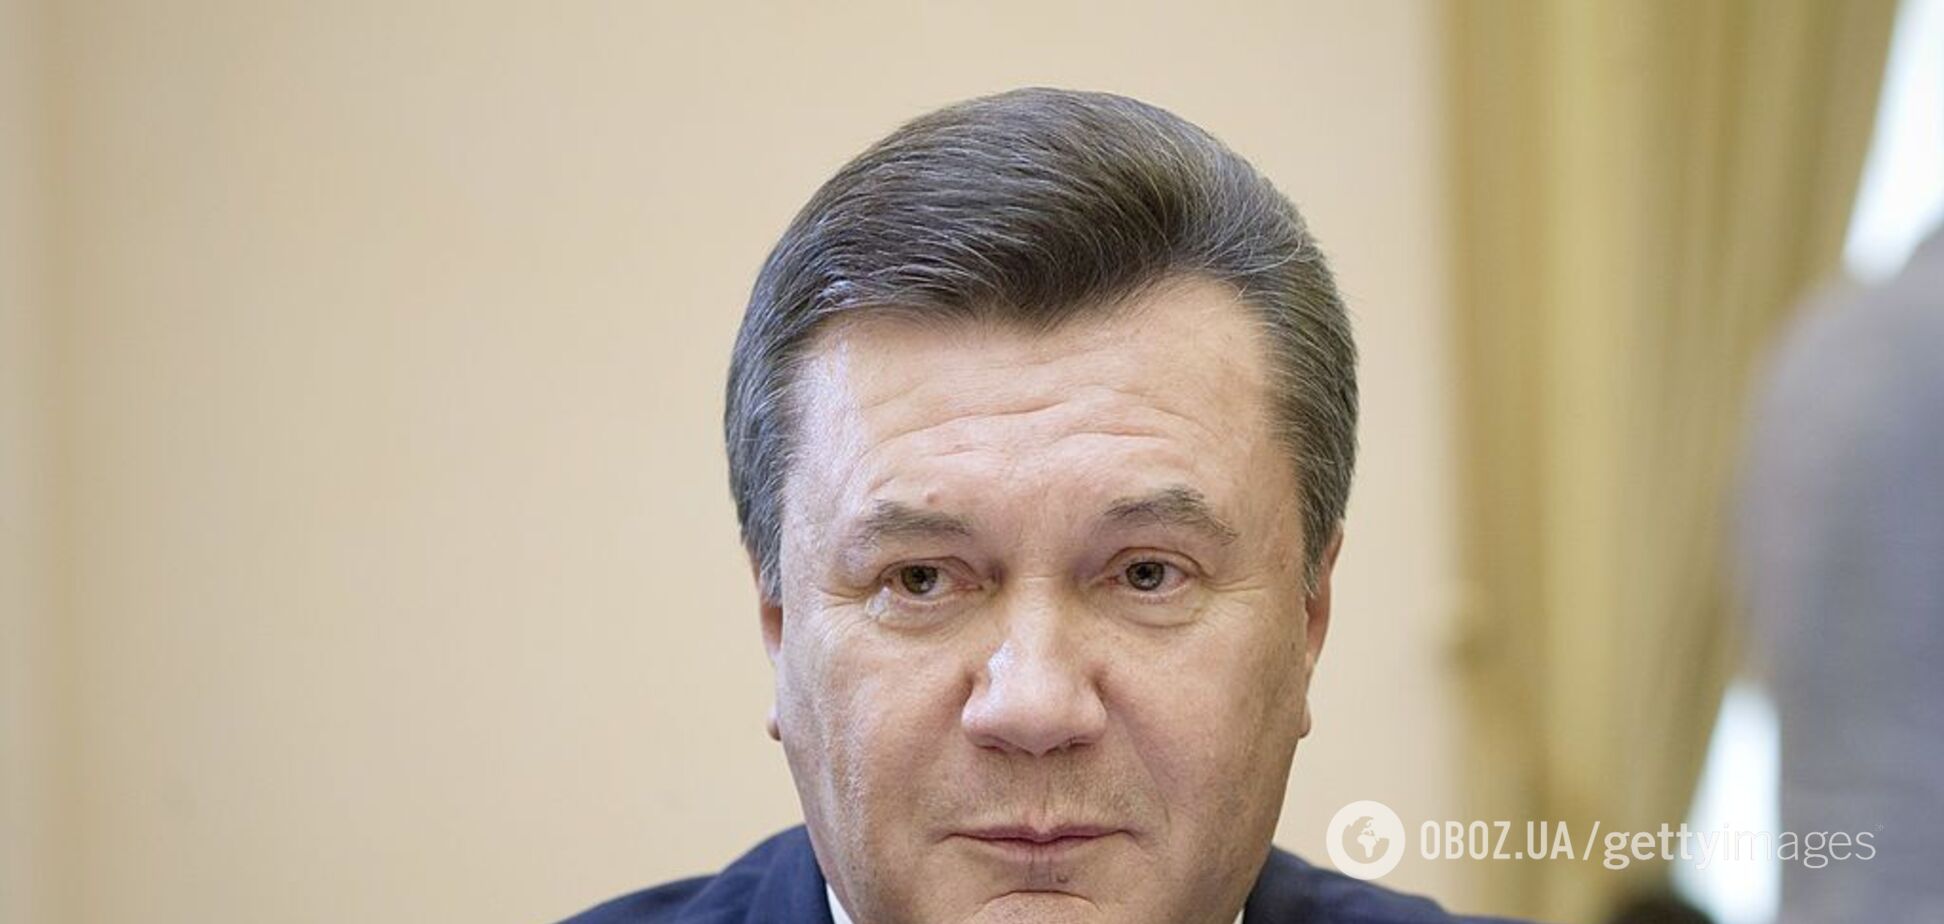 Скандал с 'черной бухгалтерией' Януковича: Лещенко сдал в ГПУ секретные документы